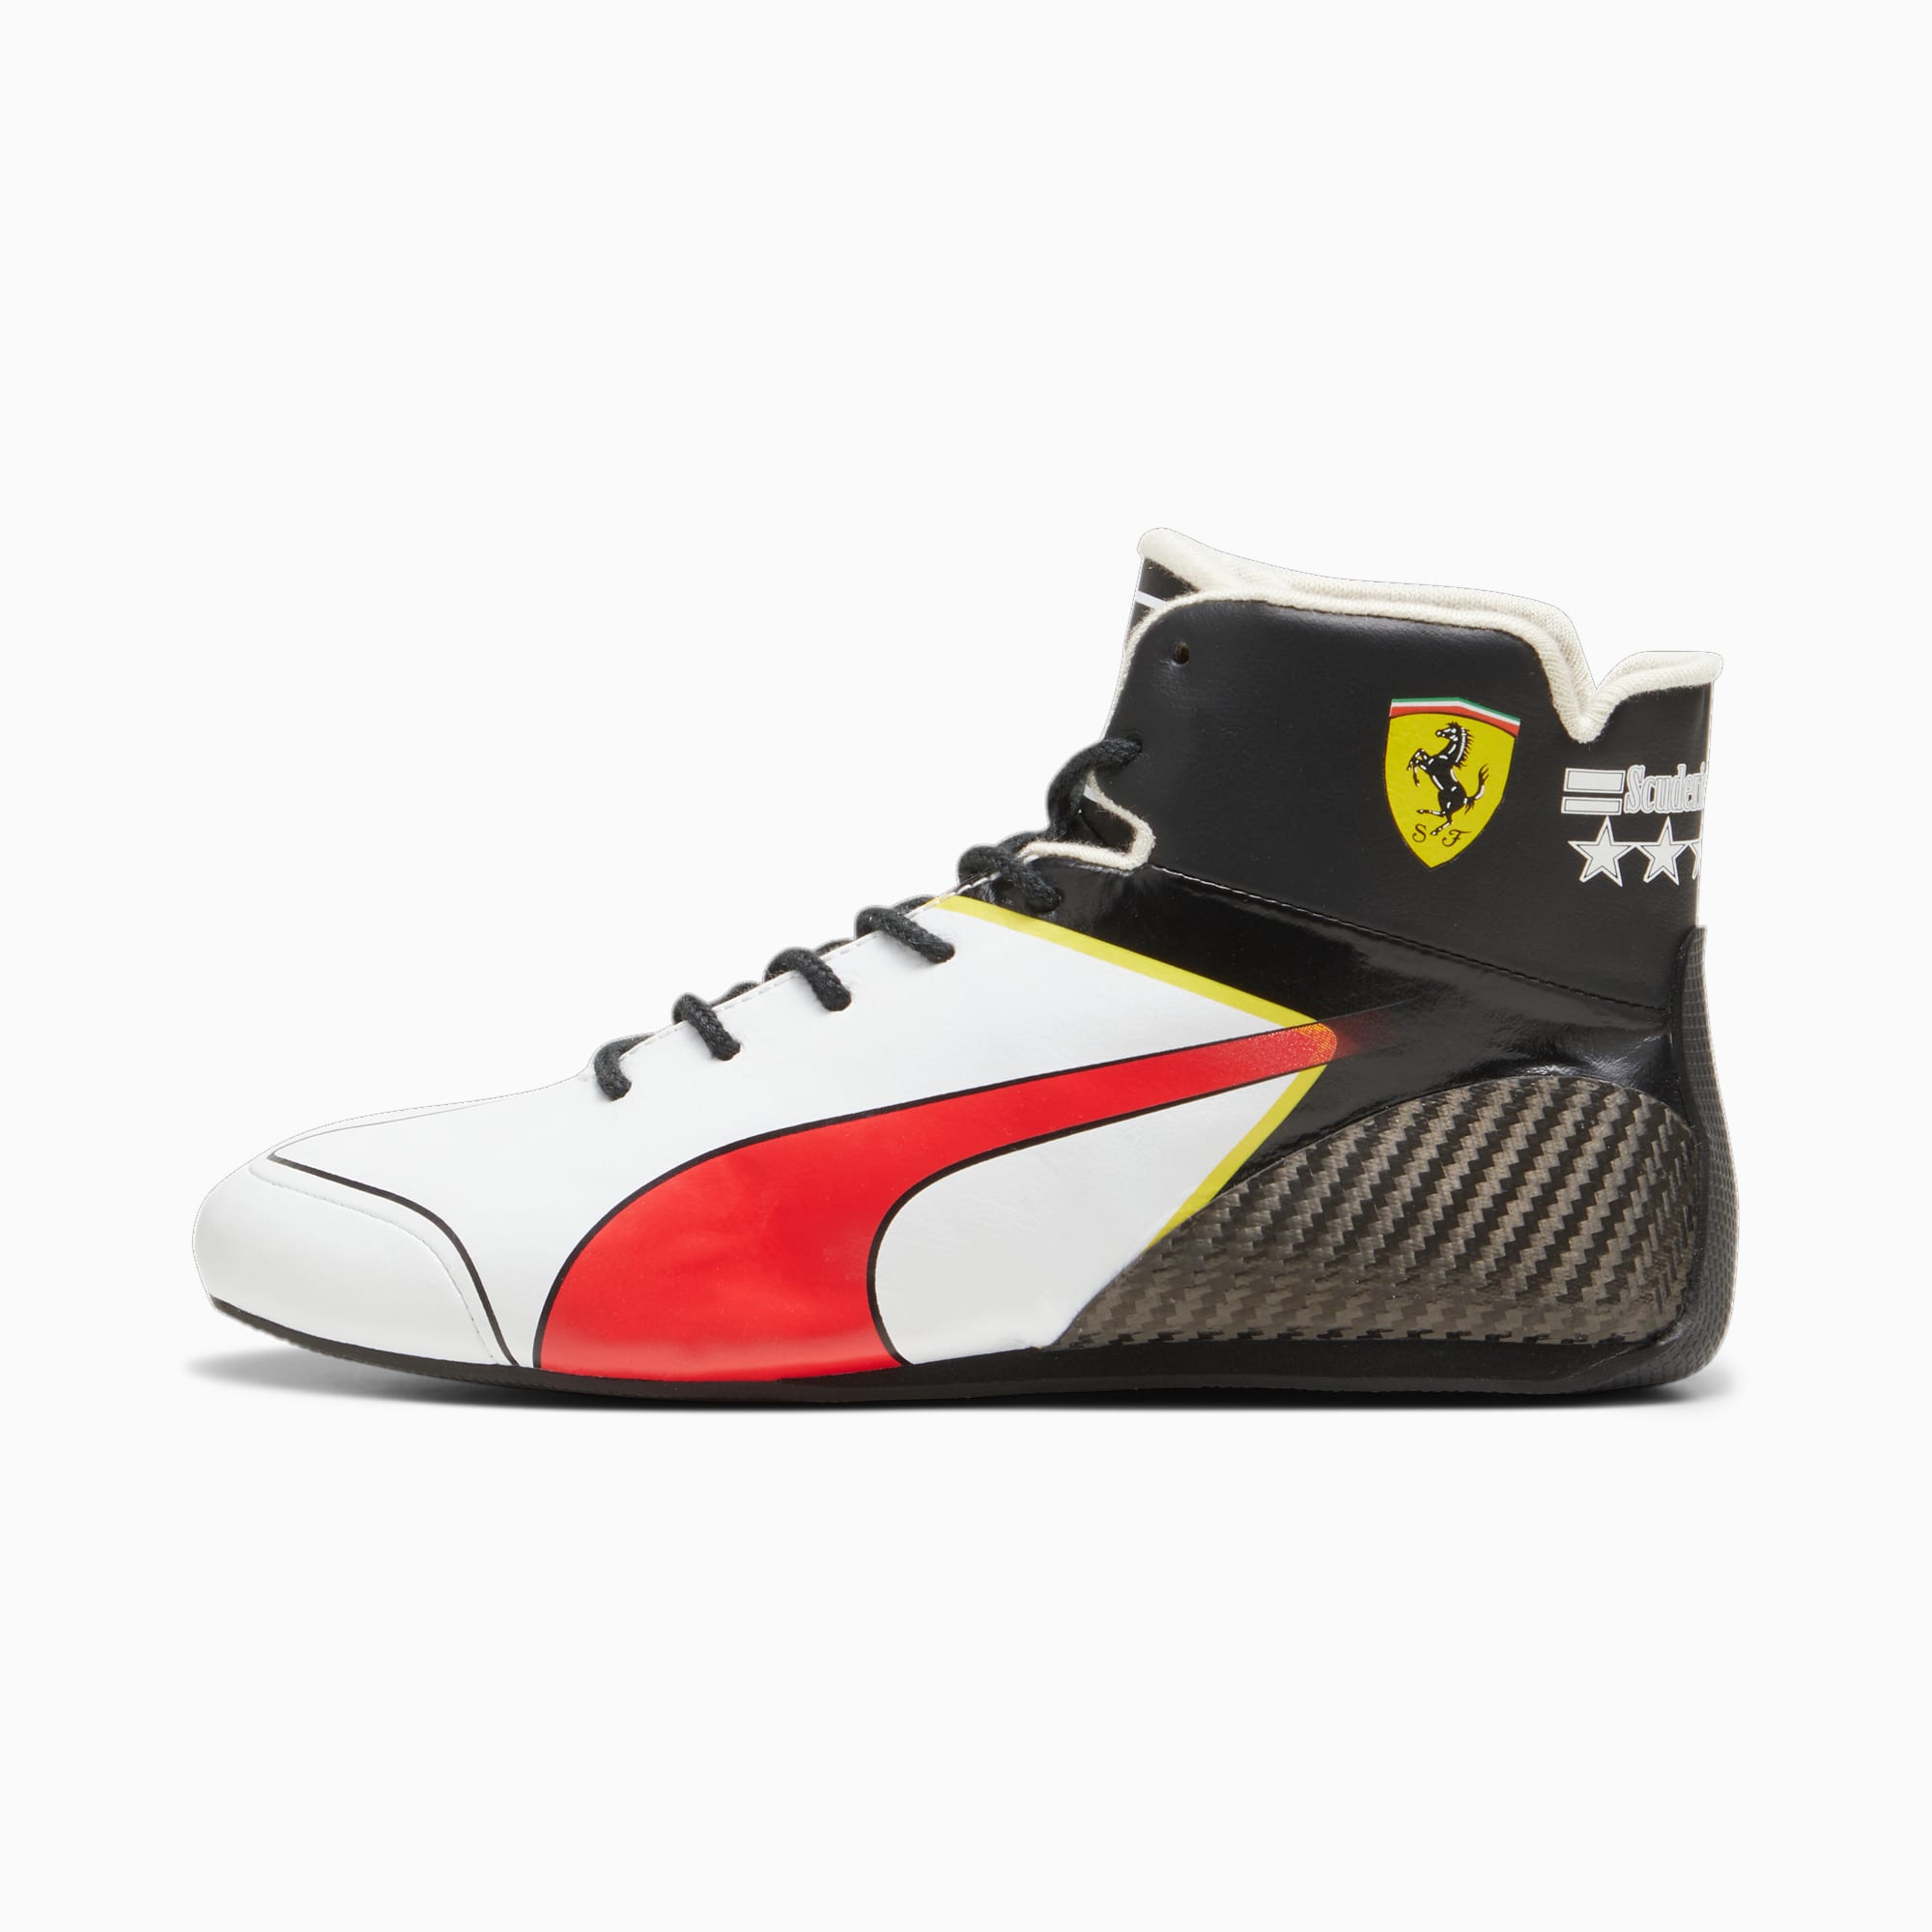 Scuderia Ferrari x June Ambrose Speedcat Pro Driving Shoes | red | PUMA